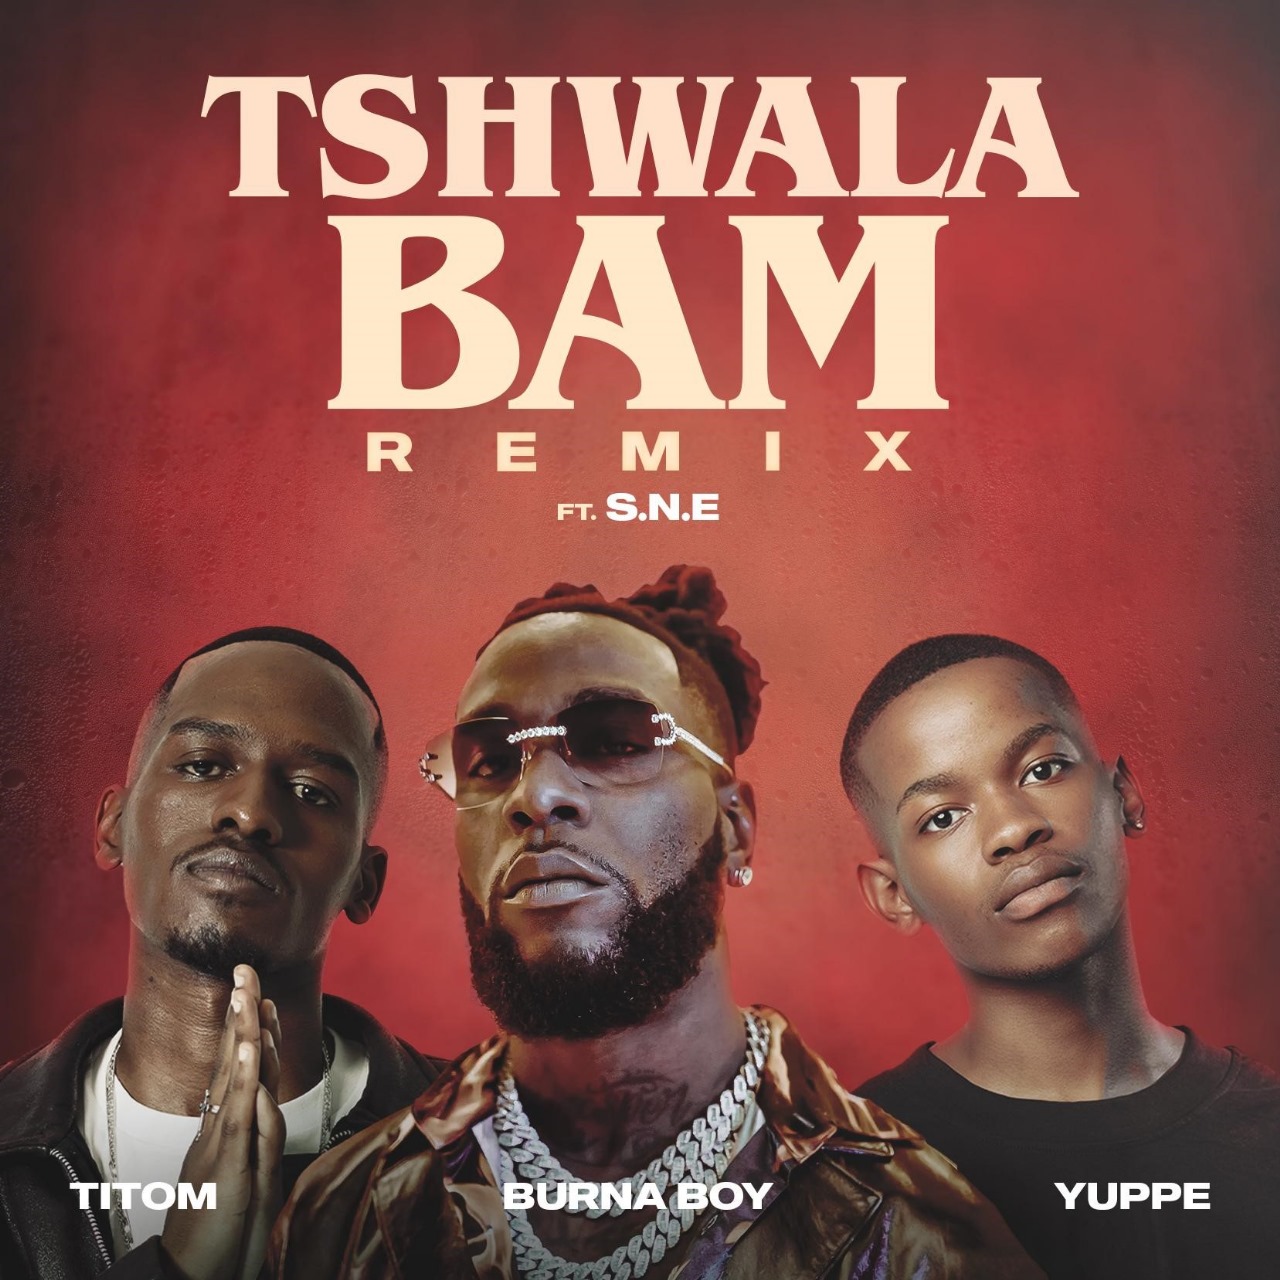 بعد النجاح العالمي لأغنية TSHWALA BAM نسخة جديدة مع النجم BURNA BOY